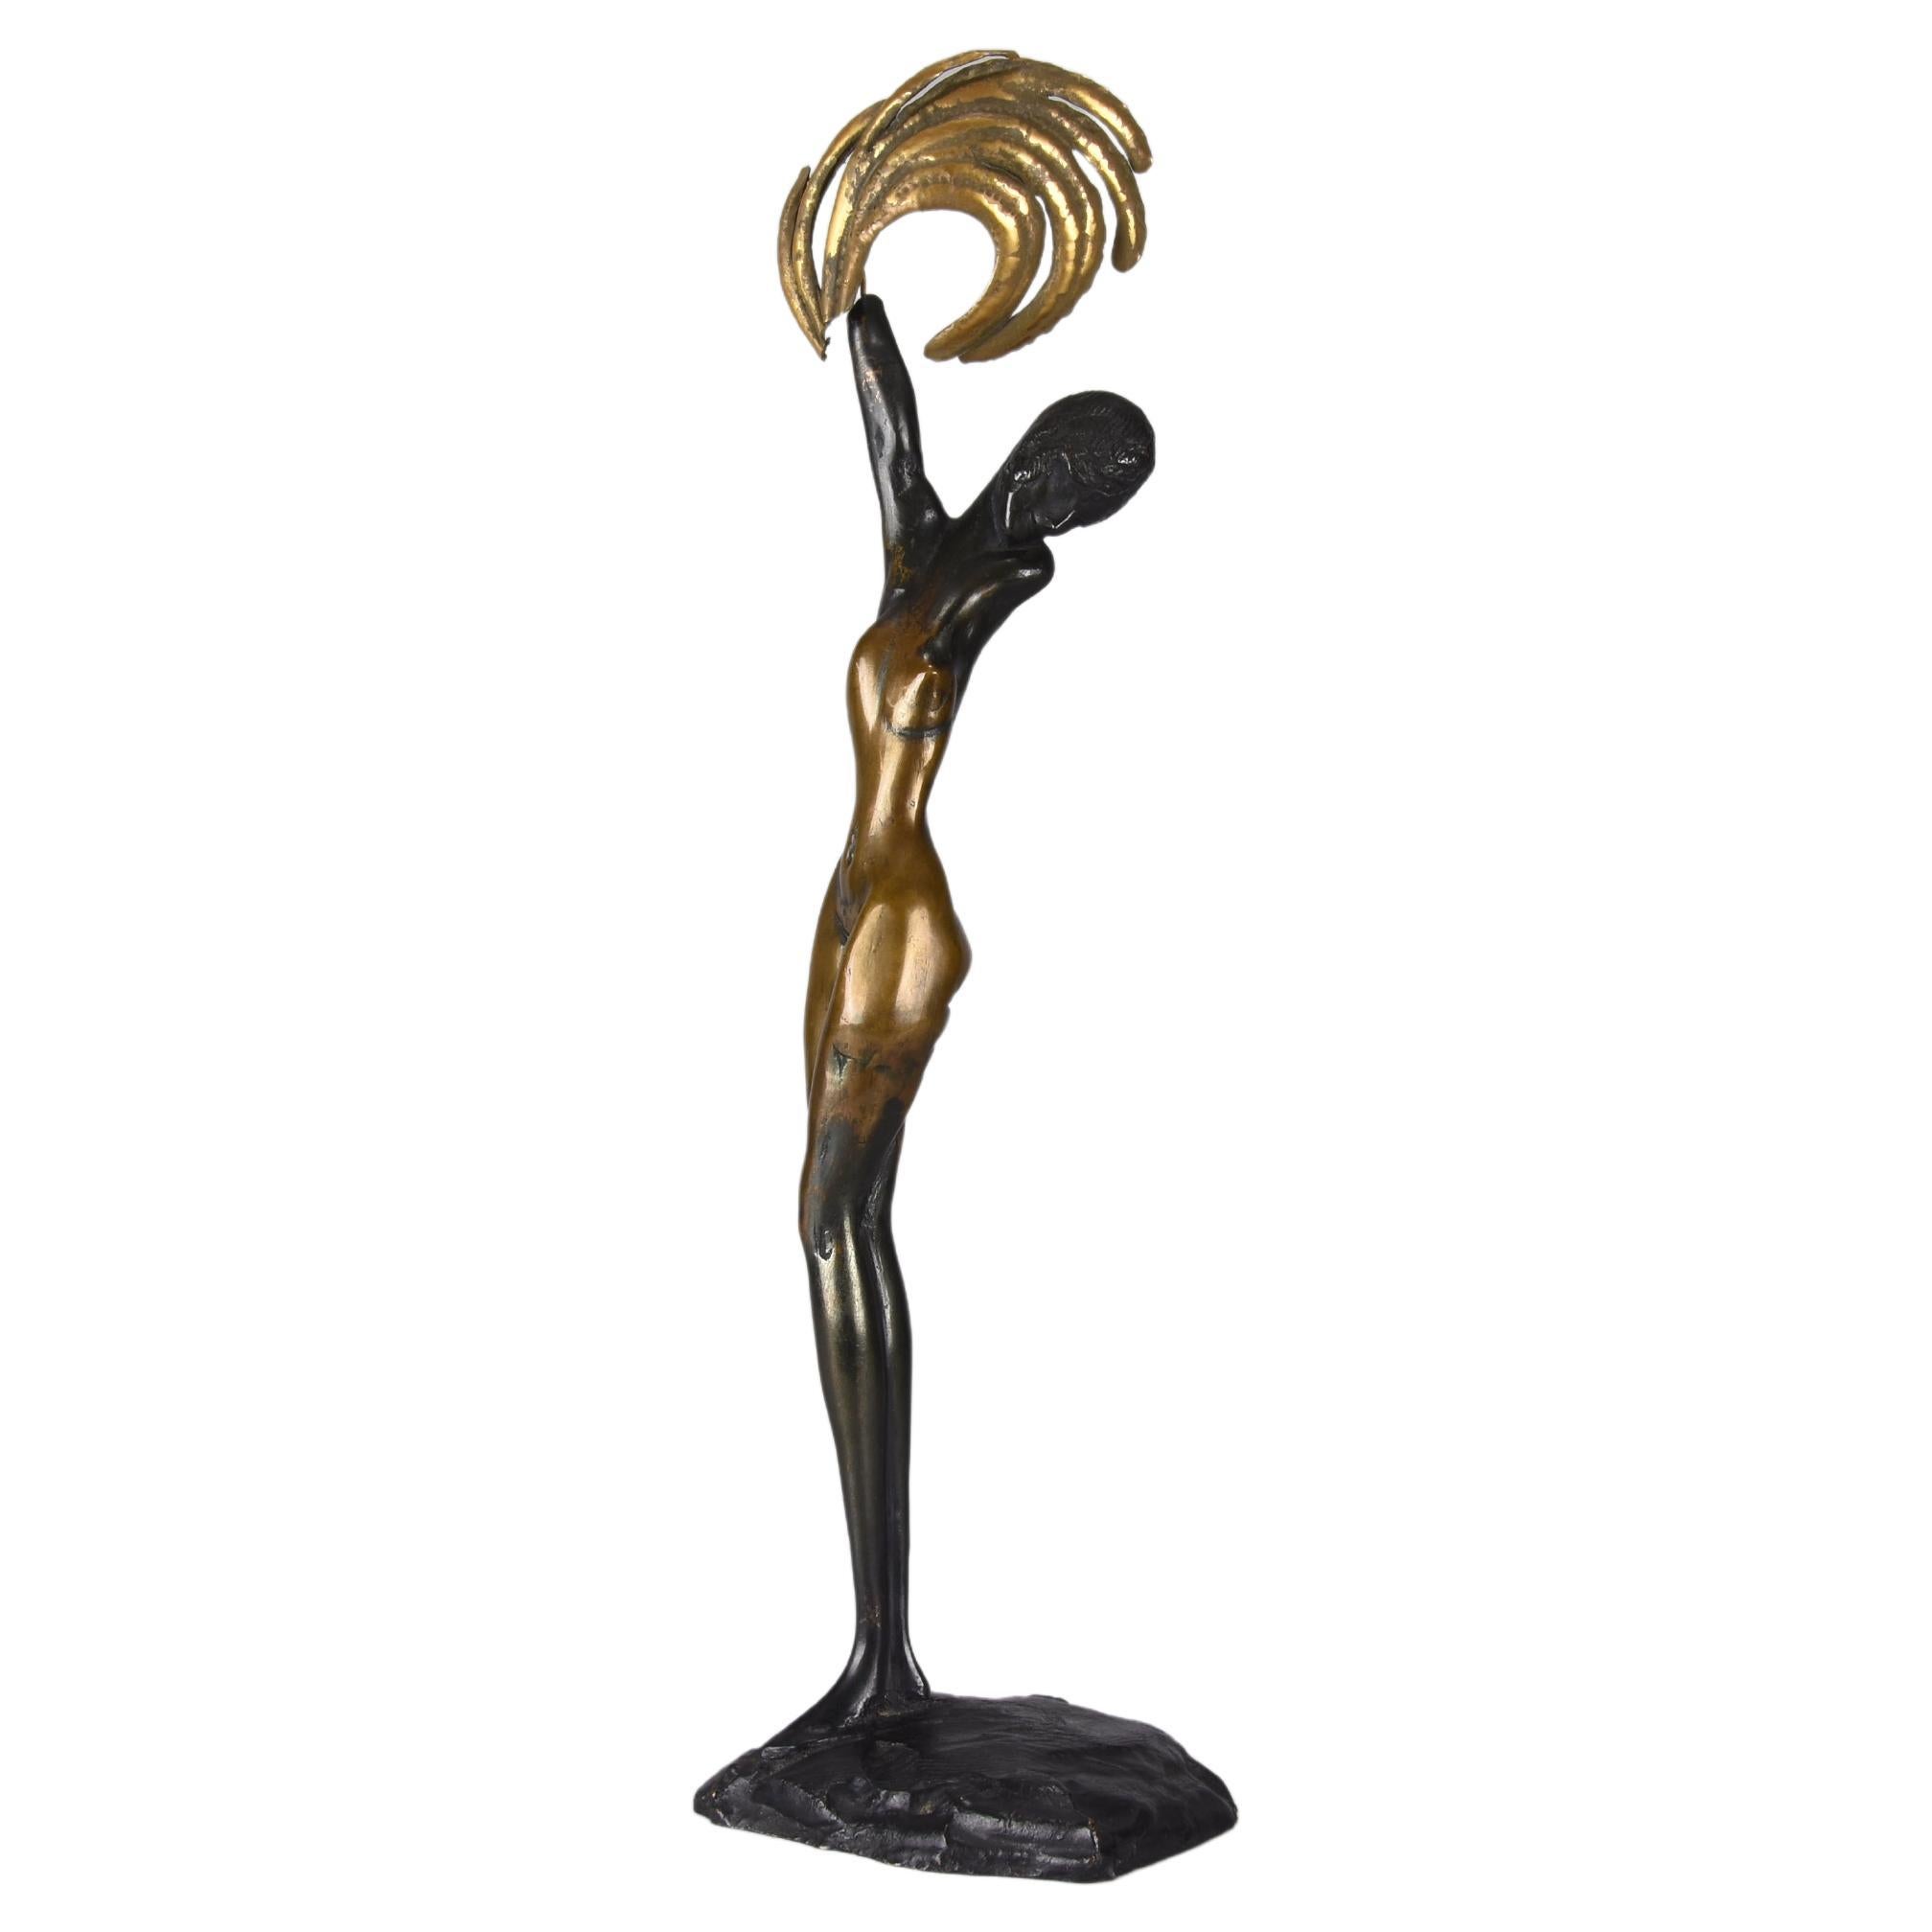 20th Century Gilt Bronze Entitled "Daphne" by Ernst Fuchs